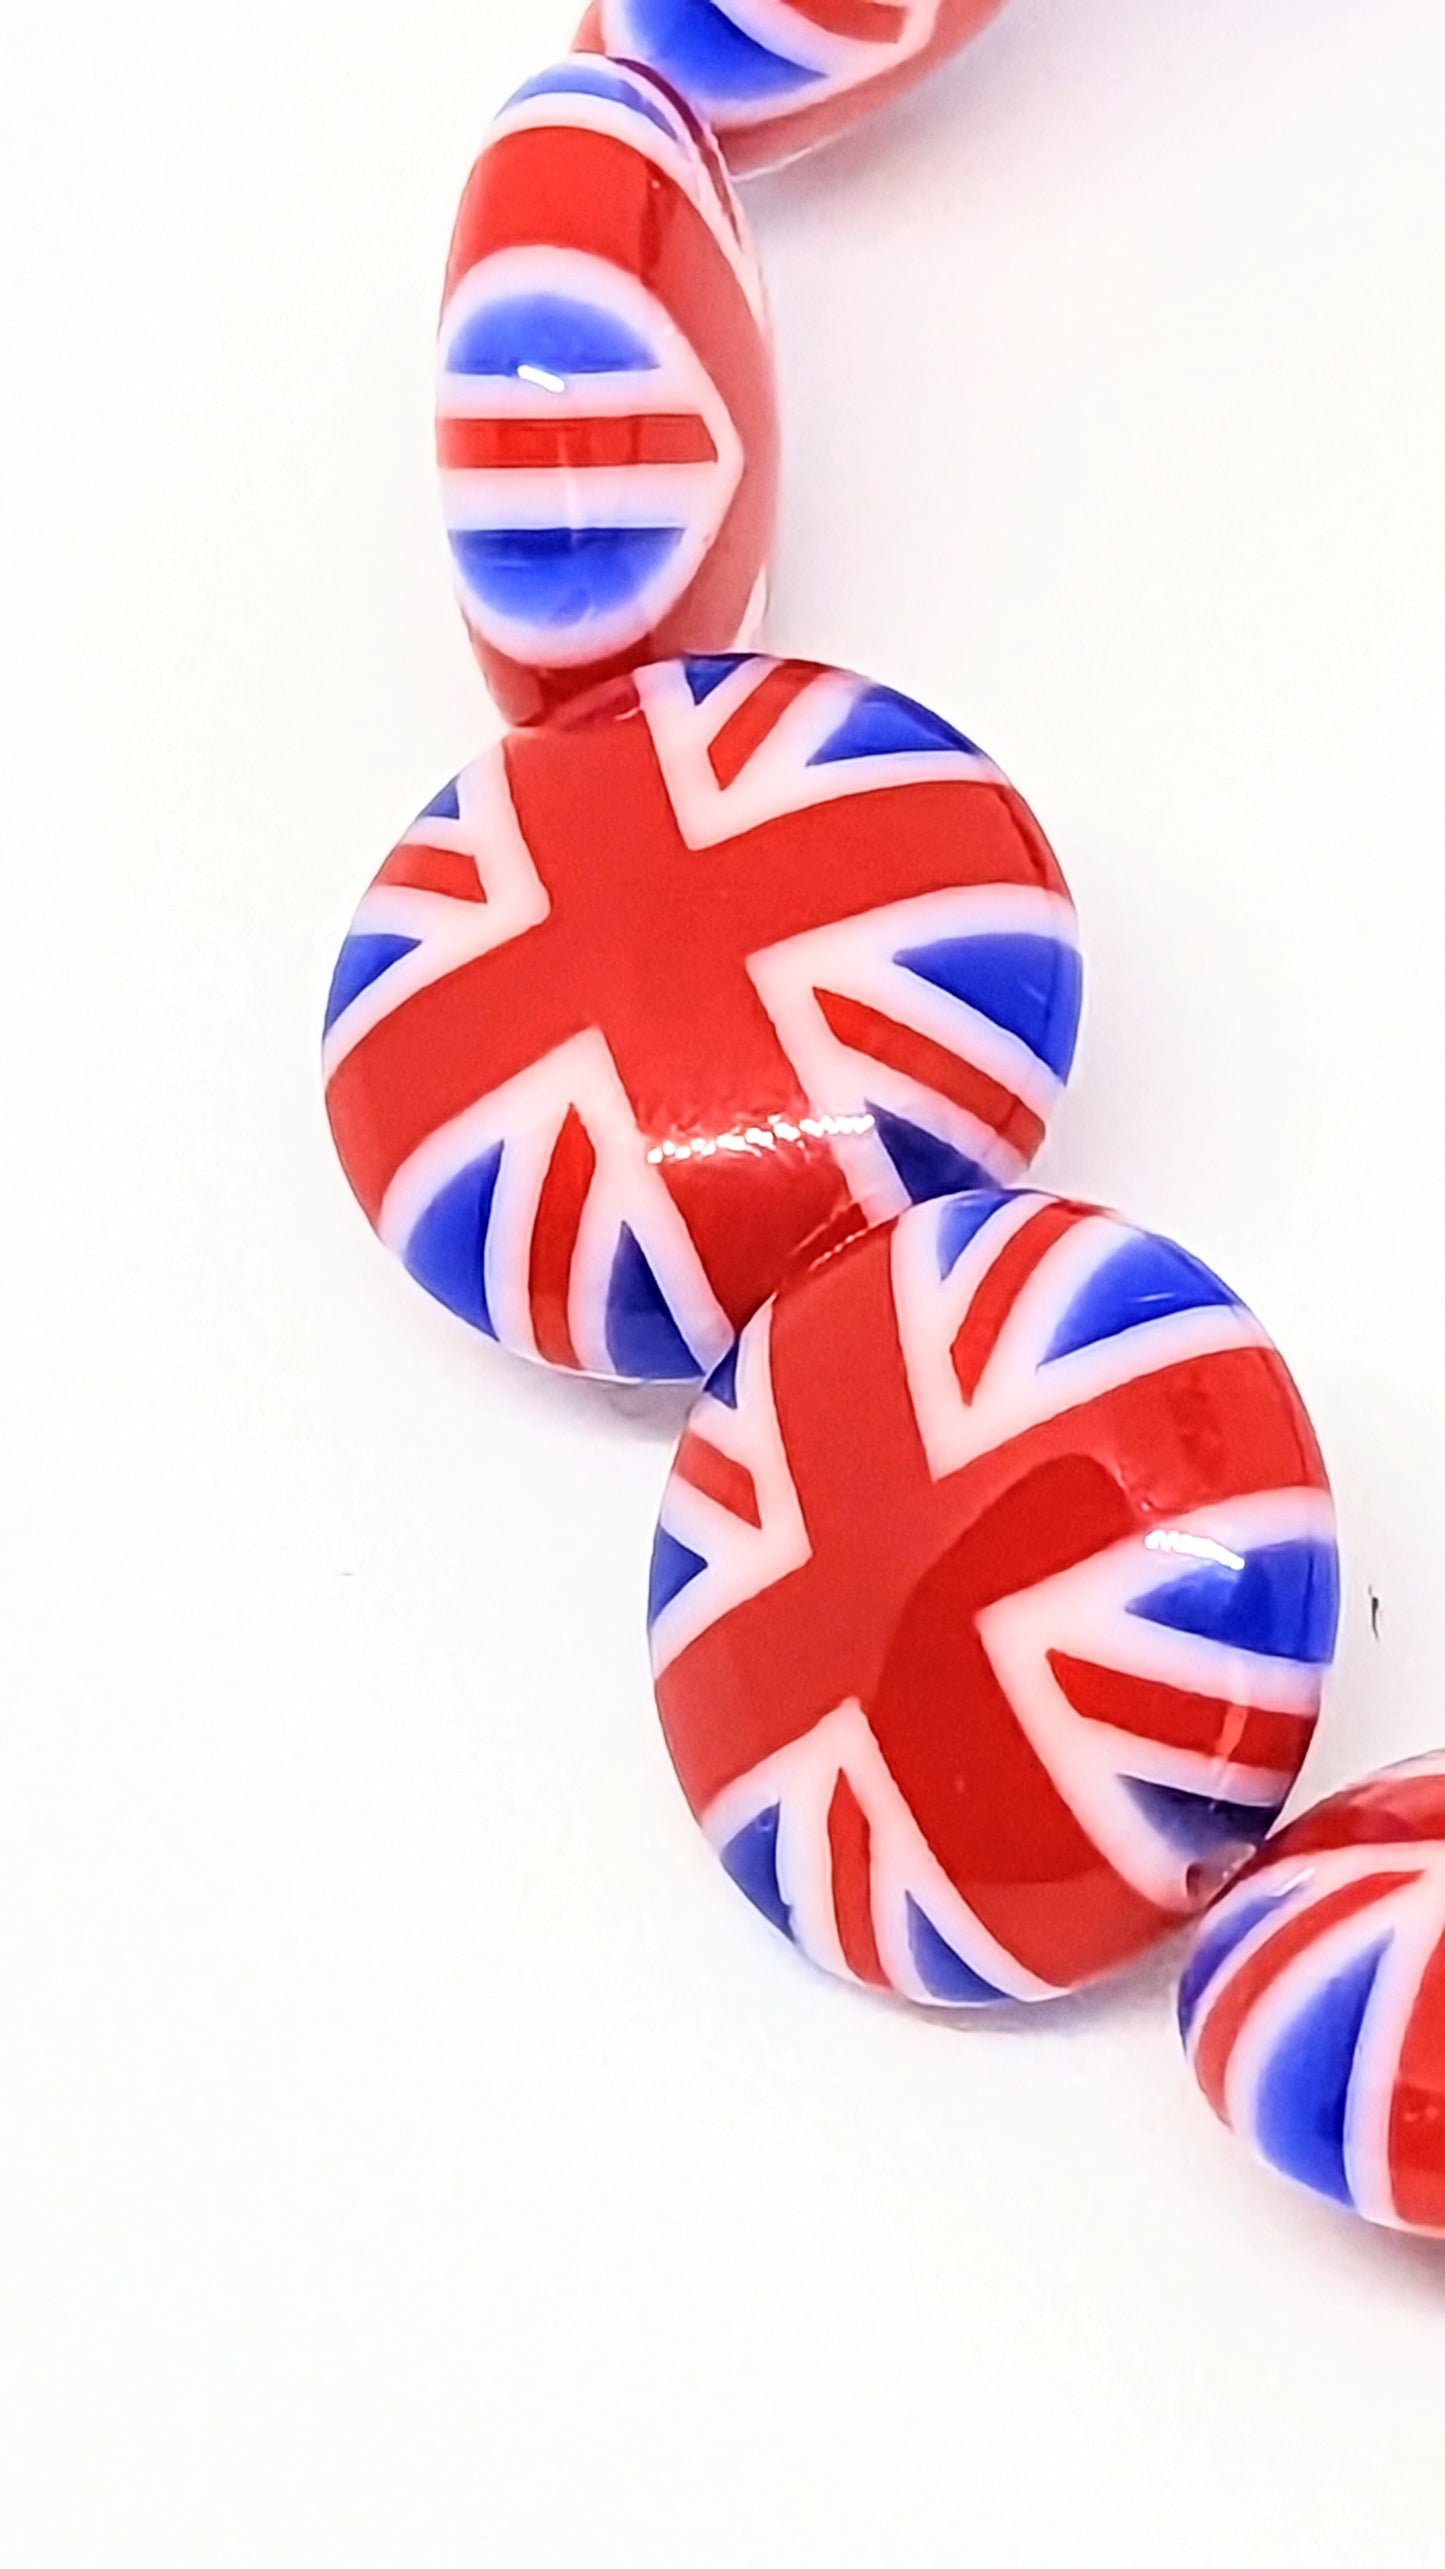 King's Coronation, Union Jack, Flag bracelet, British Flag, Patriotic jewellery, United Kingdom